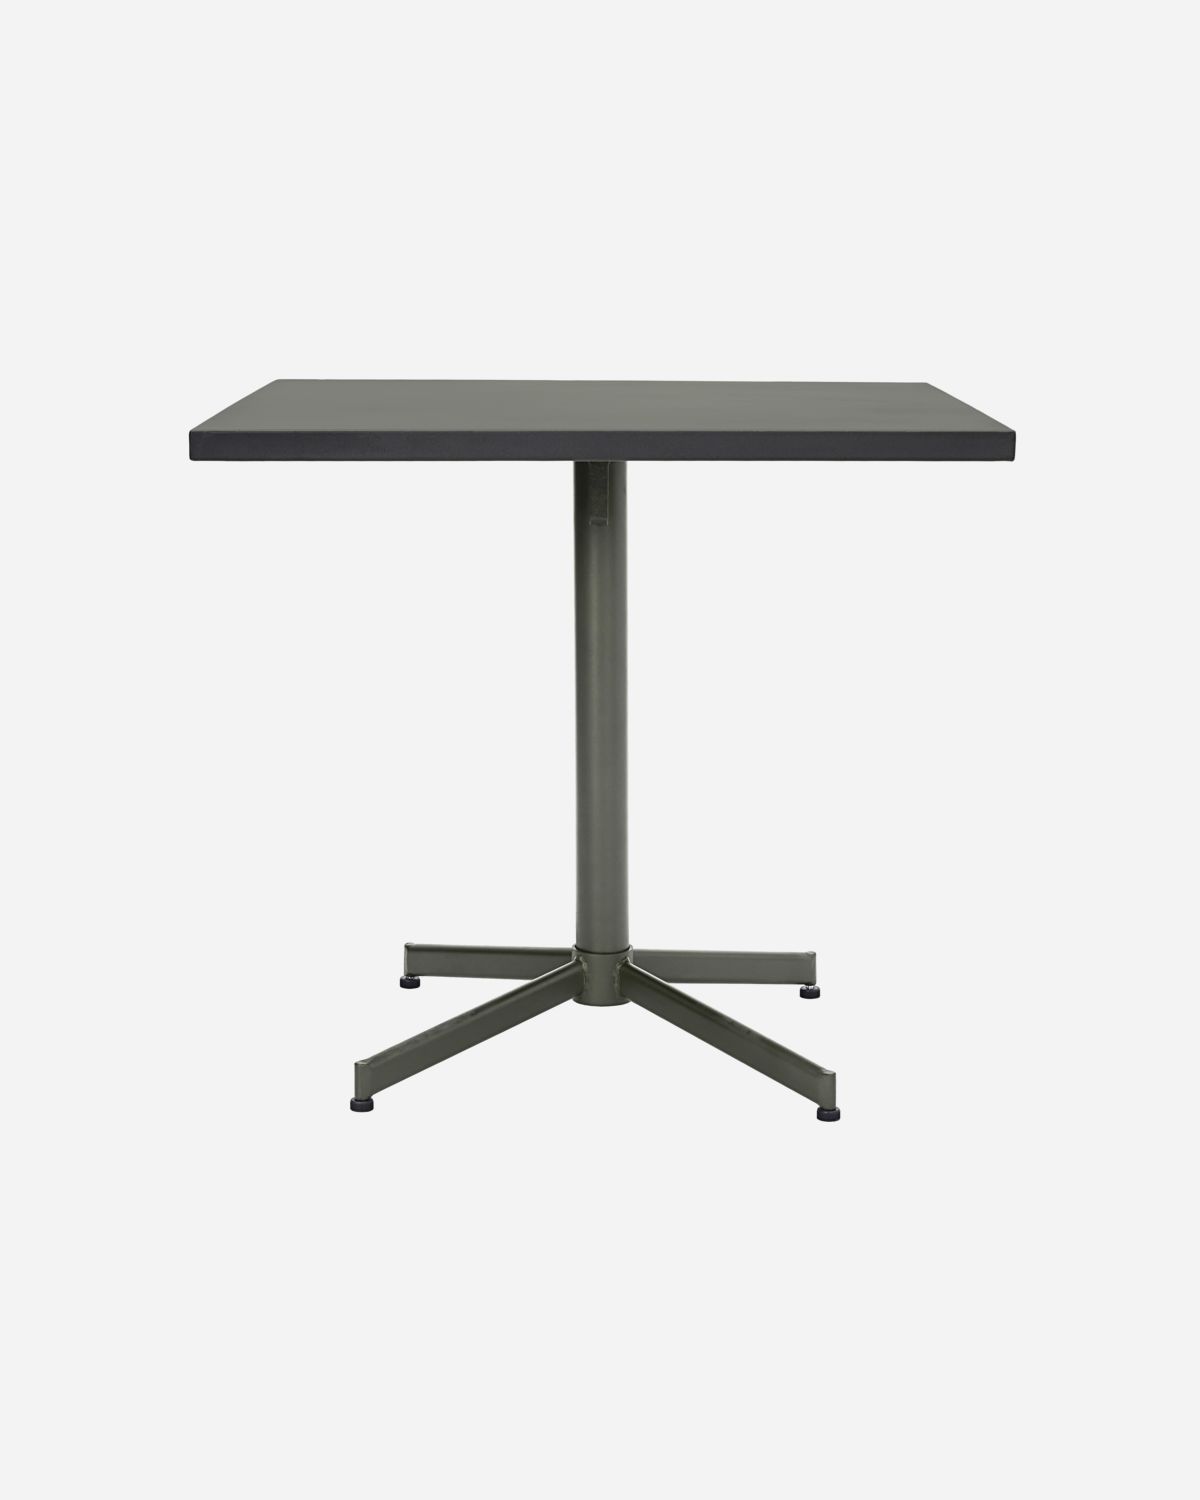 Tisch Helo Quadrat, Grün von house doctor, l: 80 cm, w: 80 cm, h: 73 cm Outdoor, Ausstellungsstück